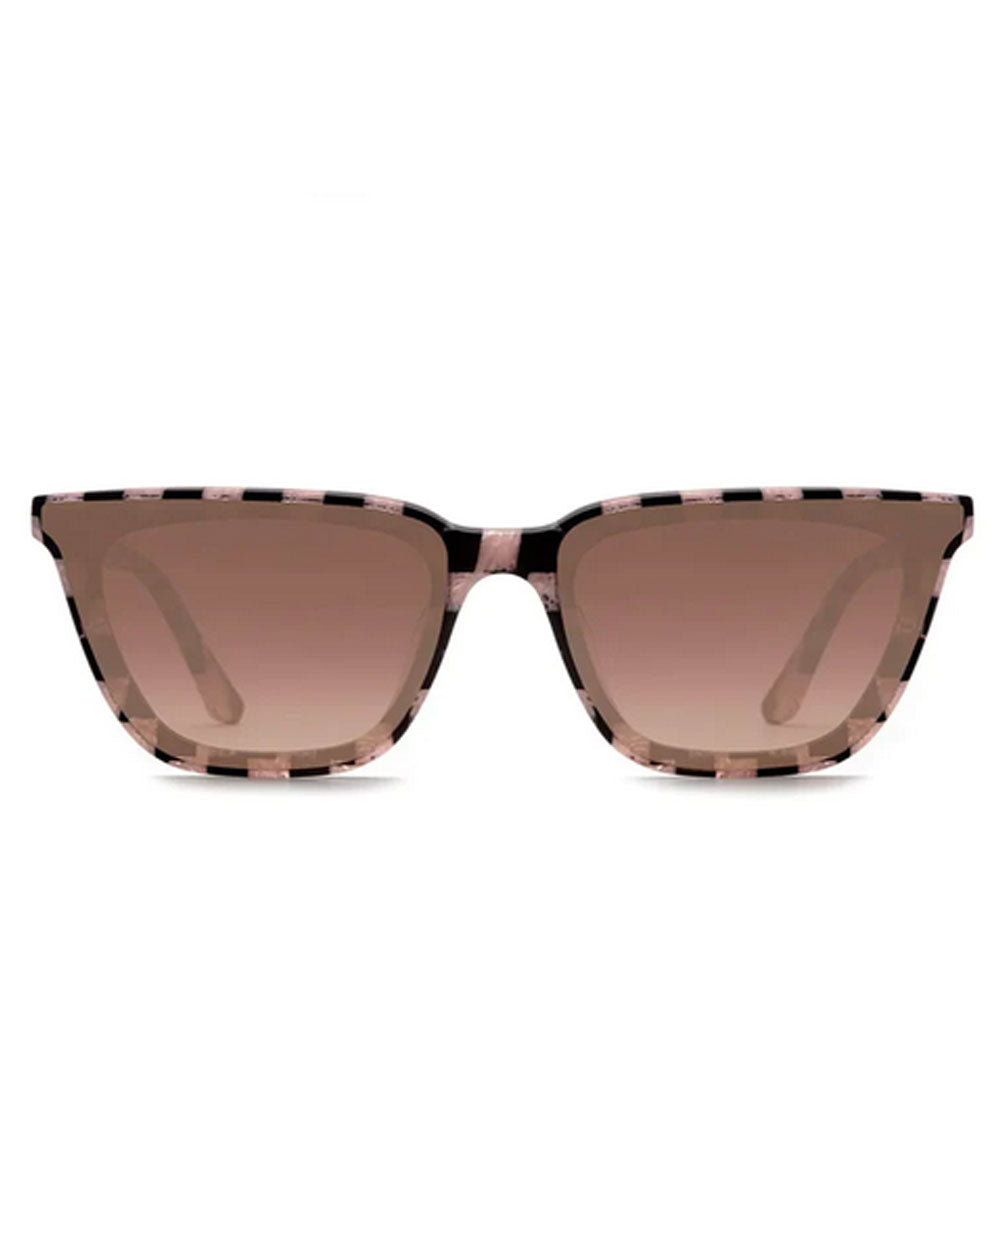 Bowery Nylon Sunglasses in Harlequin Mirrored